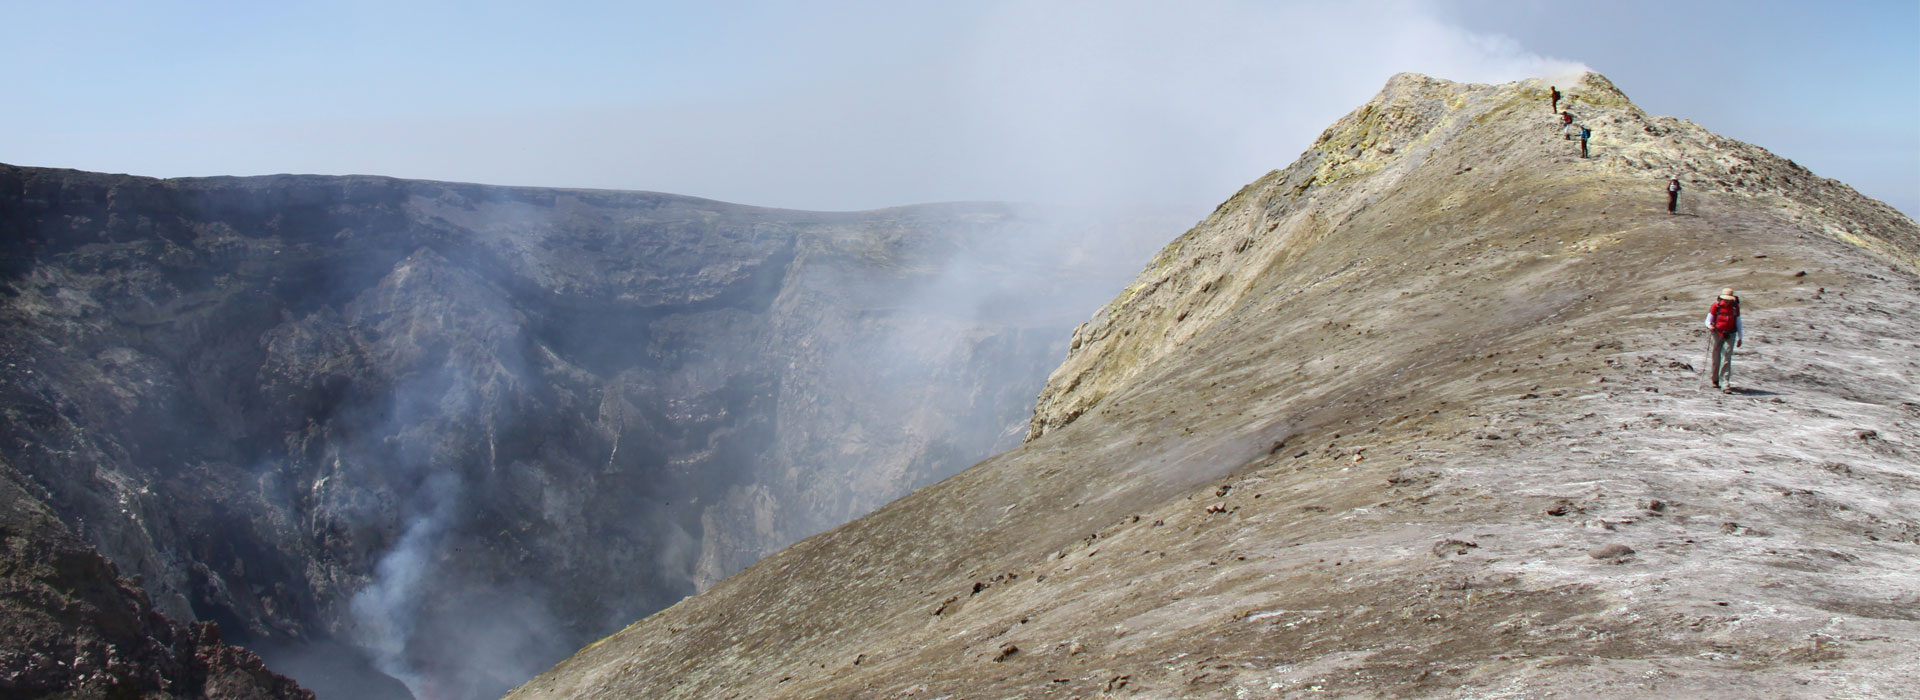 Escursione etna crateri